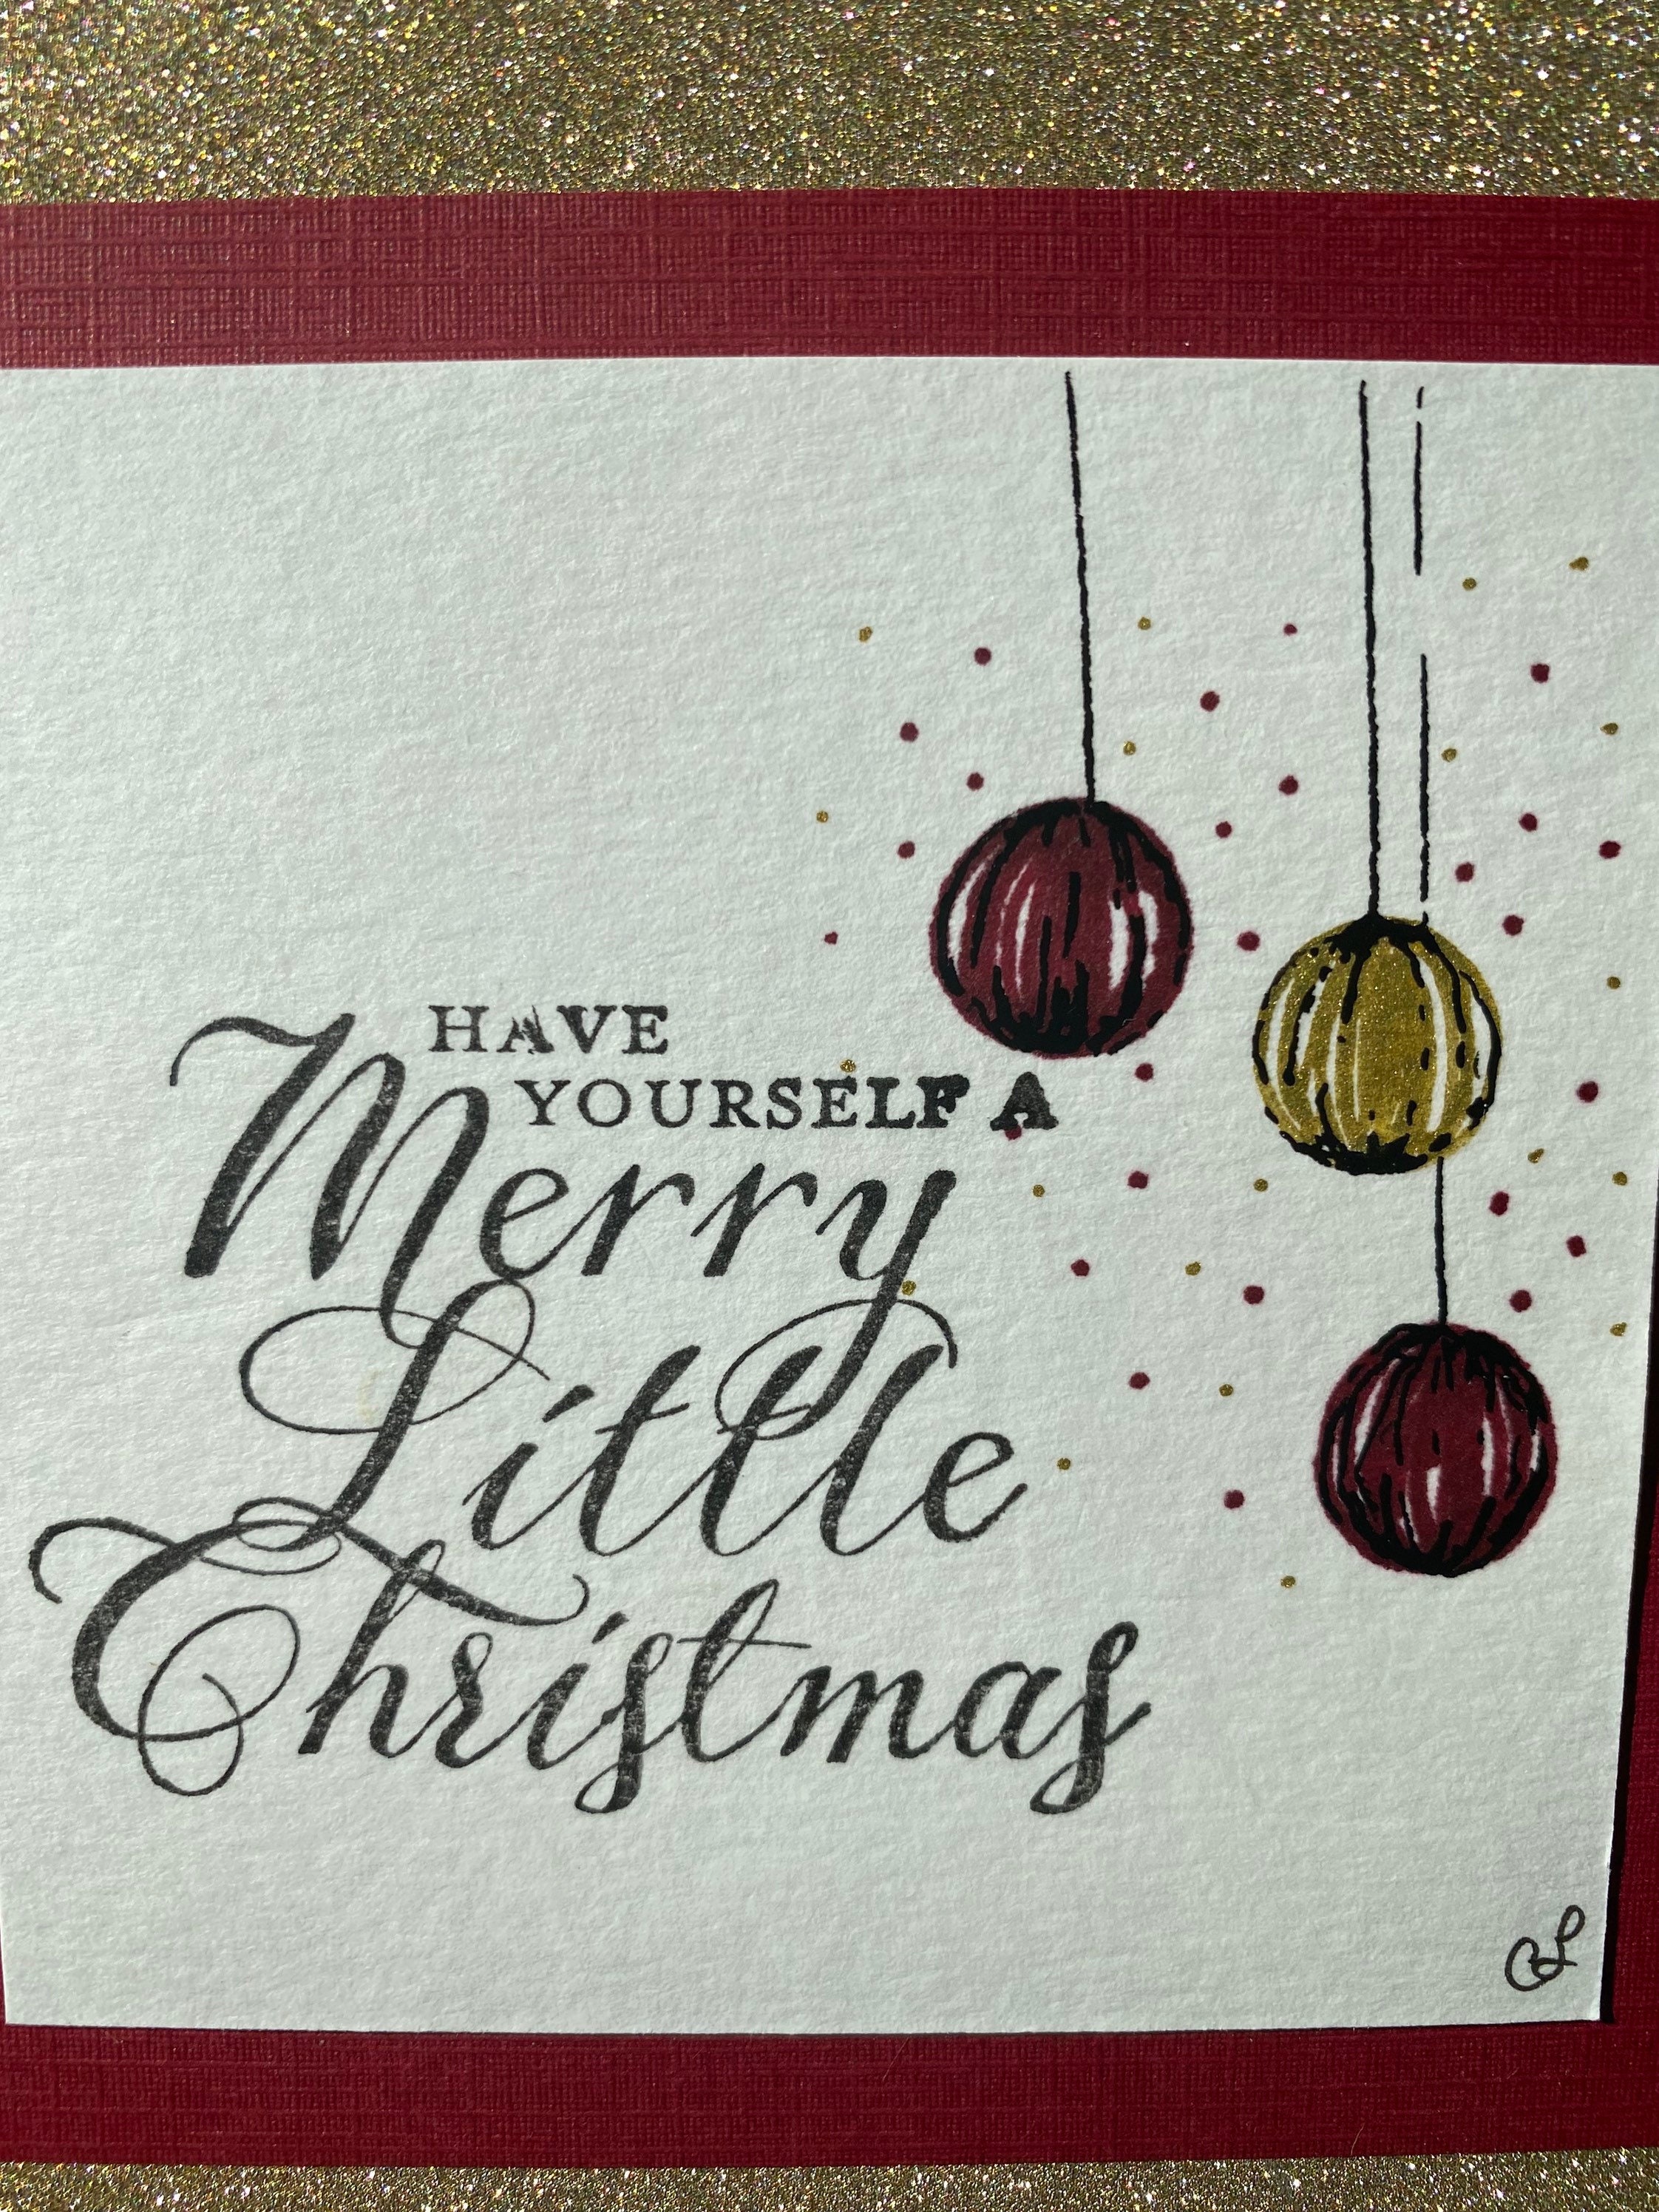 Cartes de Noël avec chocolat en relief dans une boîte dorée, lot de 5,  motif de carte : rouge avec étoiles dorées, chocolat en relief : Frohe